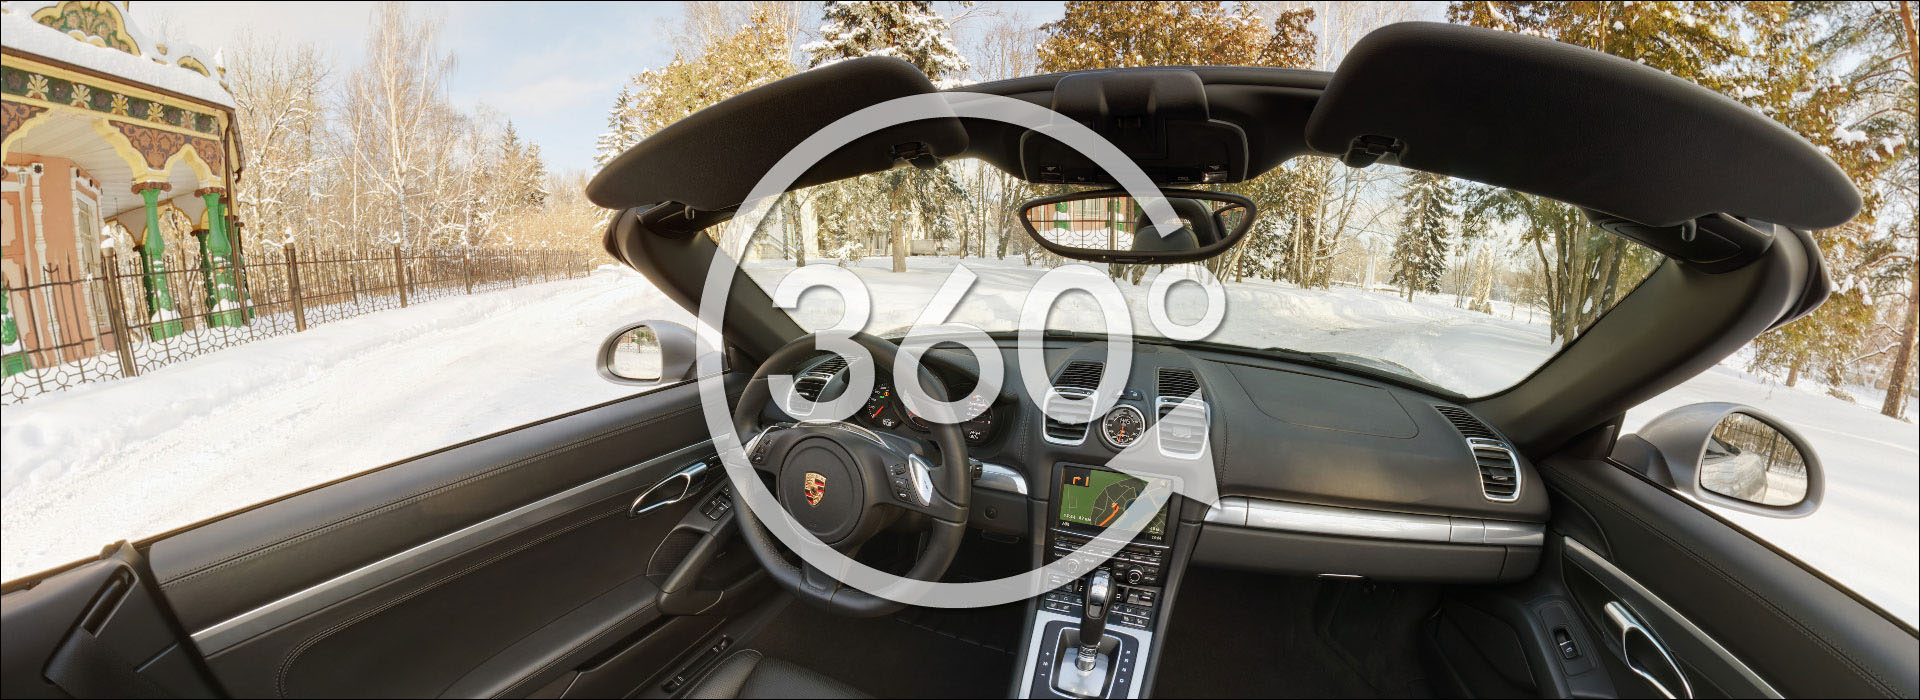 Porsche Boxster virtuální prohlídka